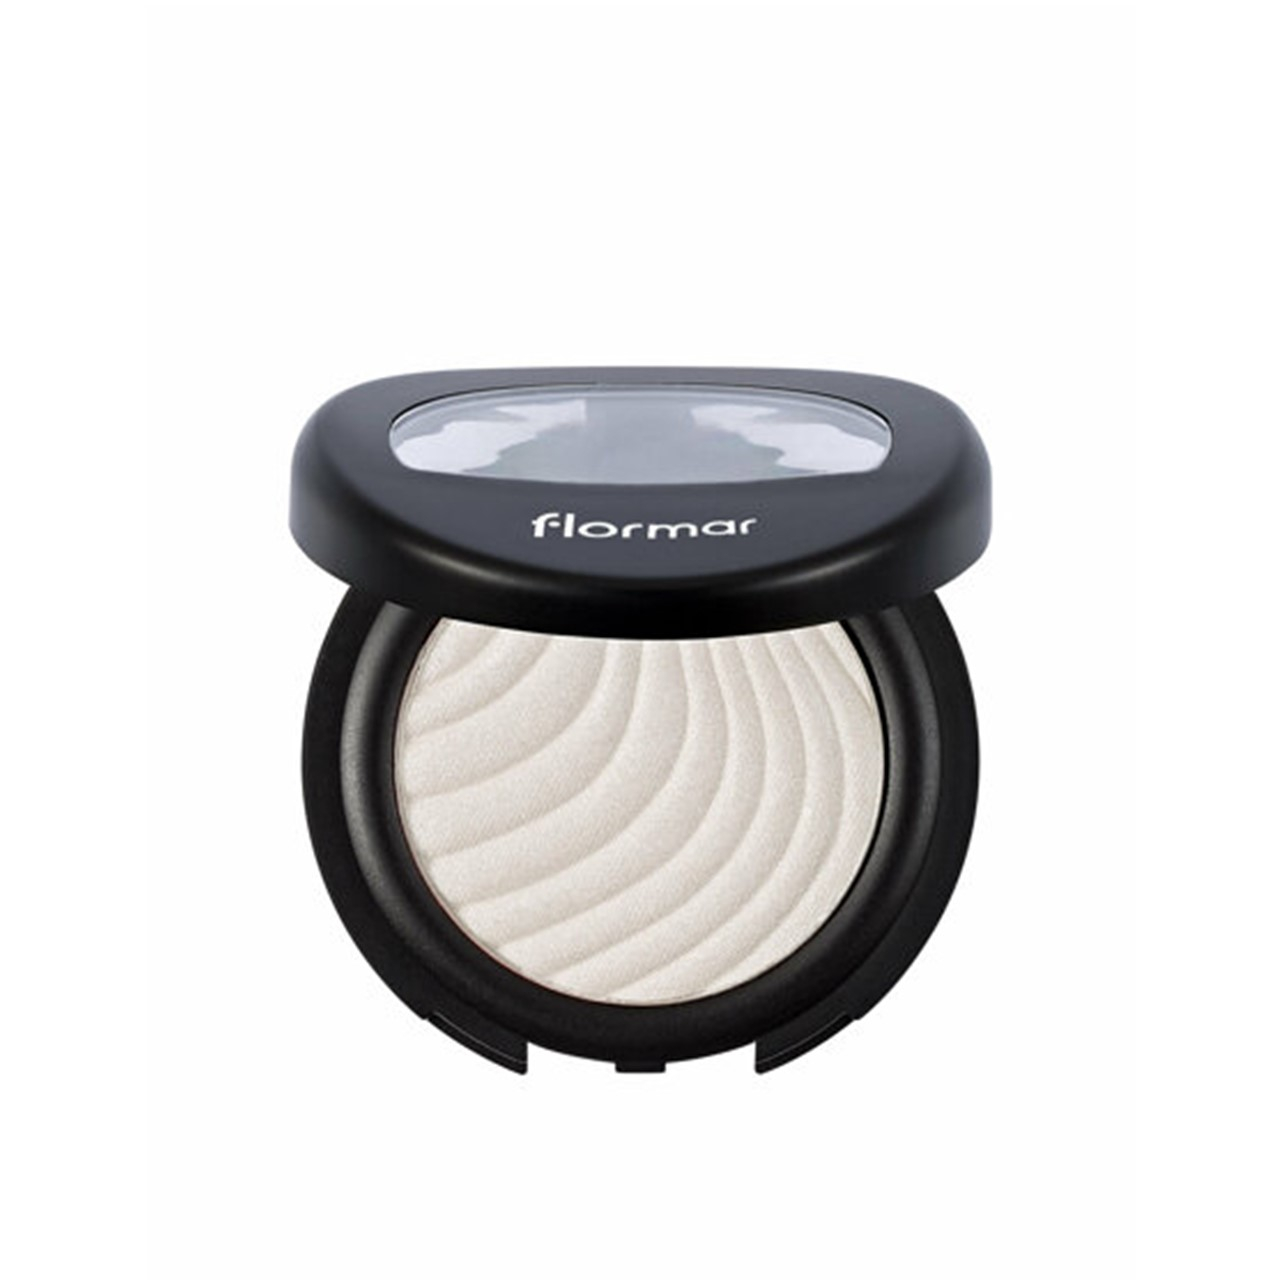 Flormar Mono Eyeshadow 01 Pearly White 4g (0.14oz)